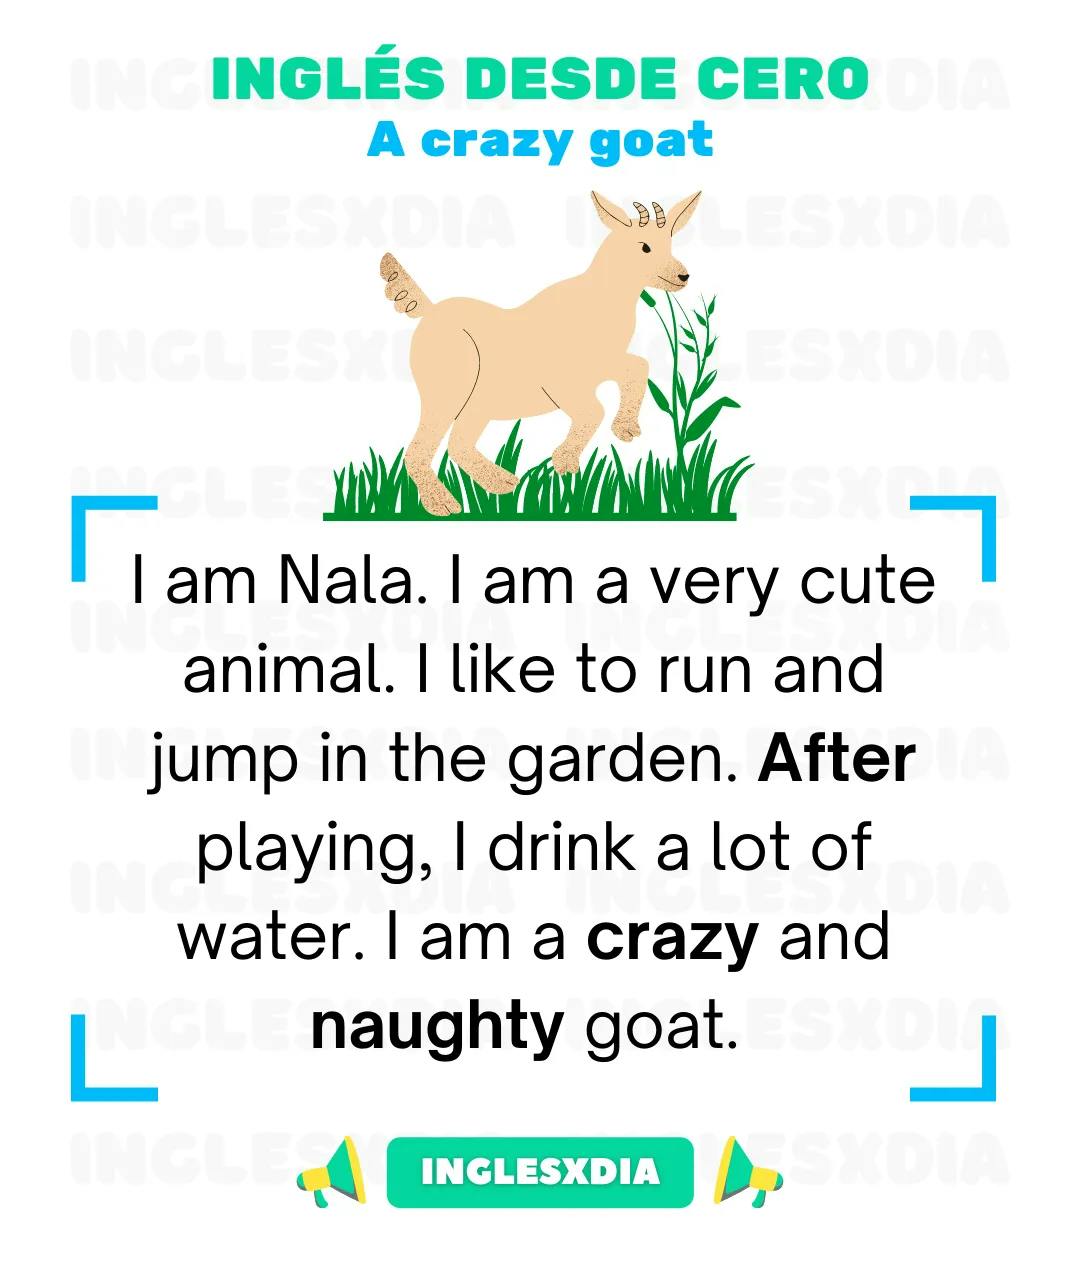 A crazy goat